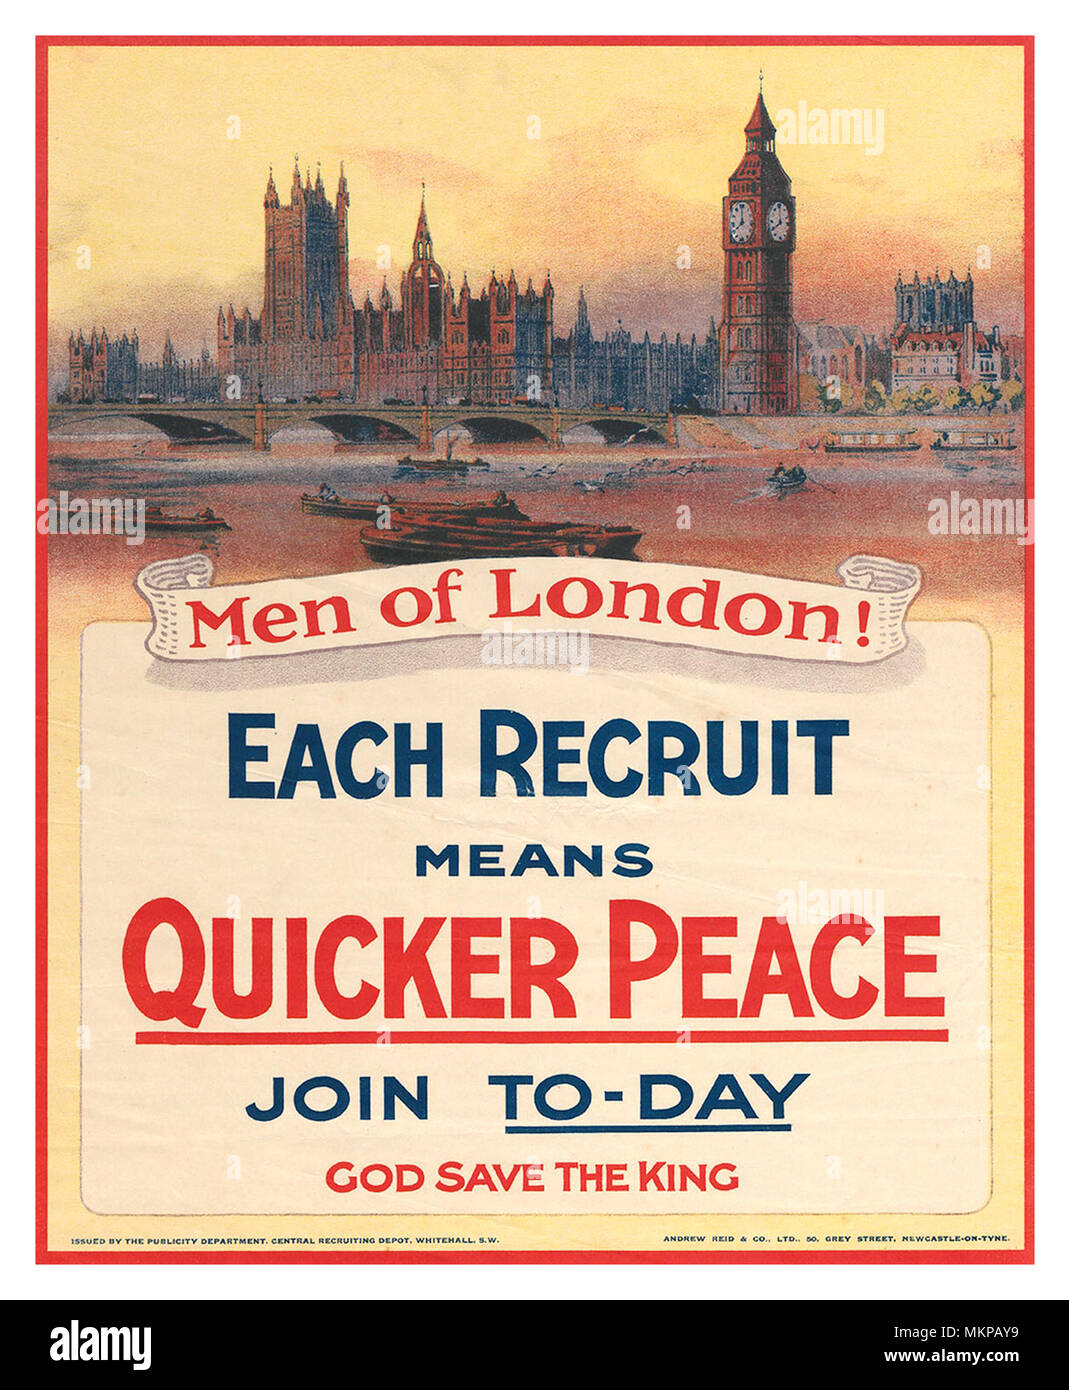 1915 WW1 British UK Rekrutierung Propagandaplakat aus London! Jeder Rekrut bedeutet schnellere Frieden. Melden Sie to-day. God Save The King' Palast von Westminster, das Parlament London, Großbritannien Stockfoto